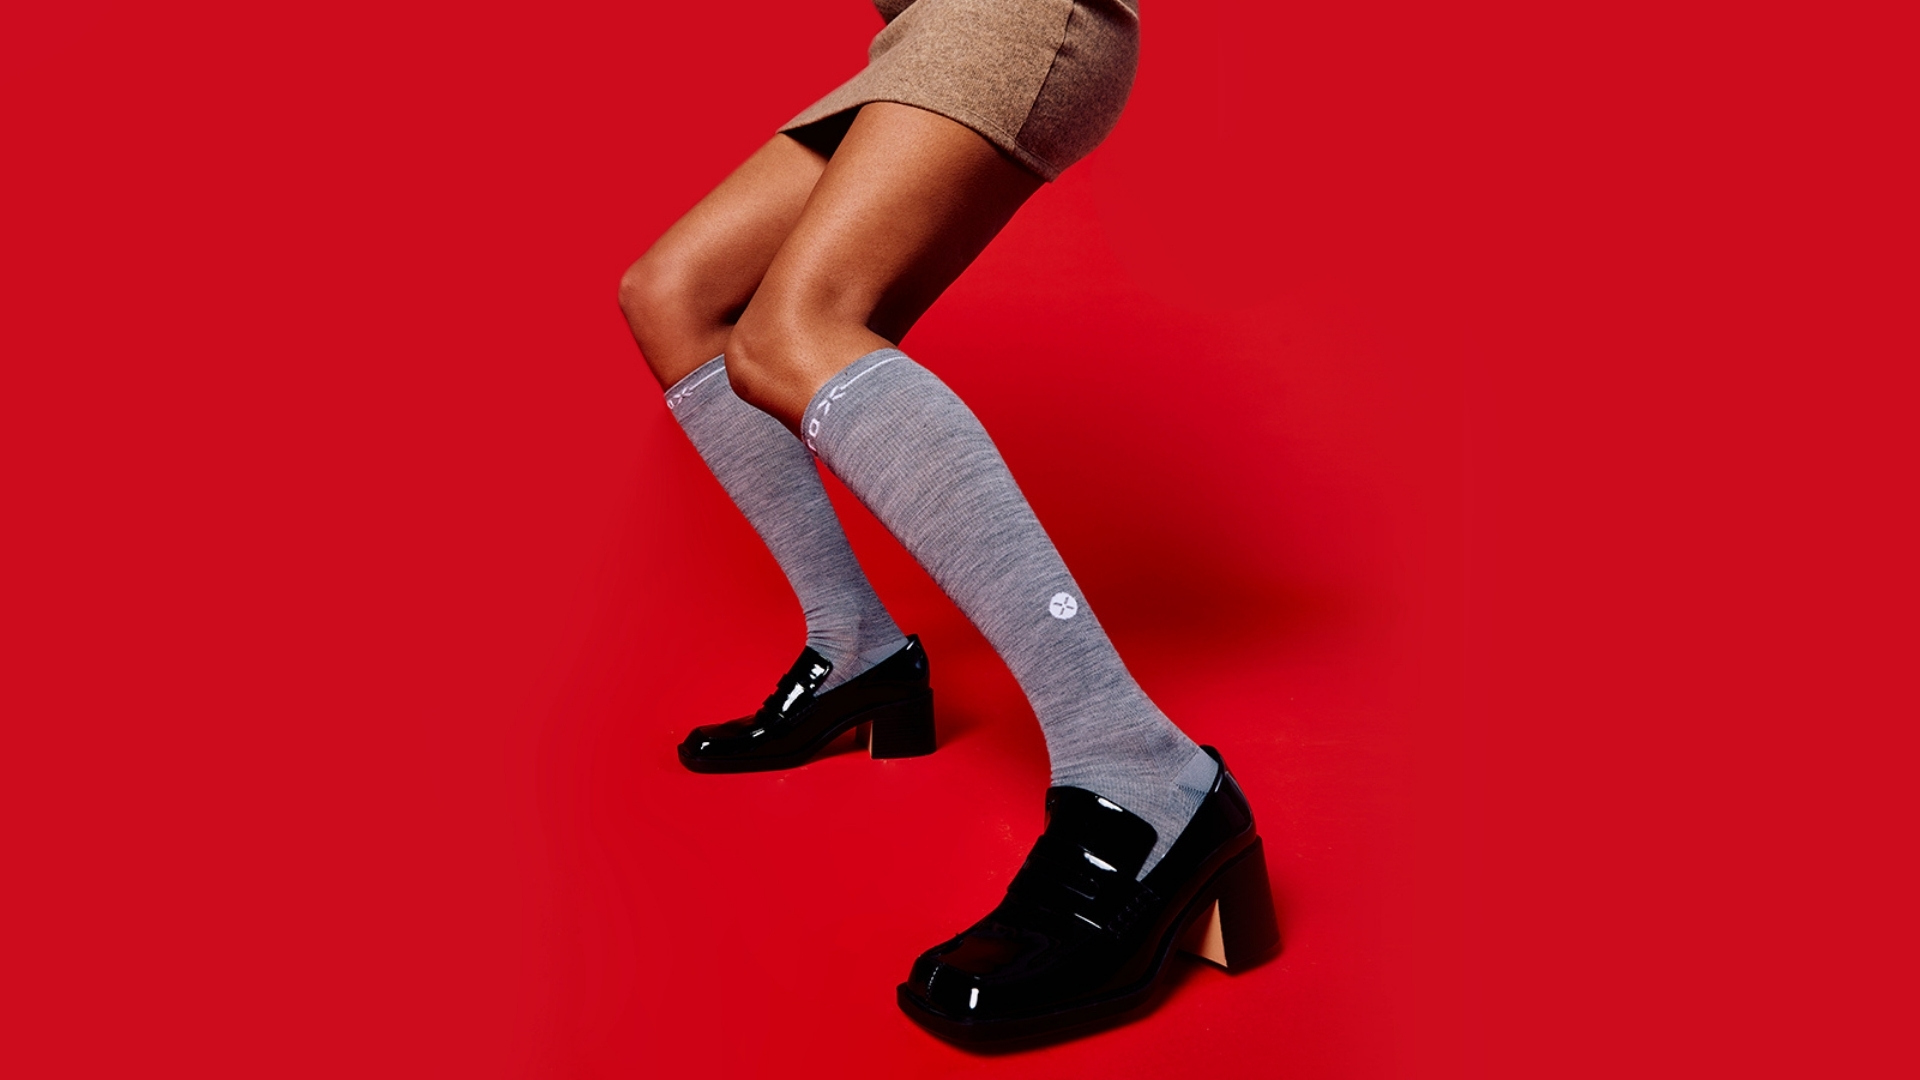 STOX Energy Socks 1 paio Made in Italy Calze comode in lana merino Calze a compressione di prim'ordine per donne in gravidanza Riduce il gonfiore Sollievo per le gambe nervose 